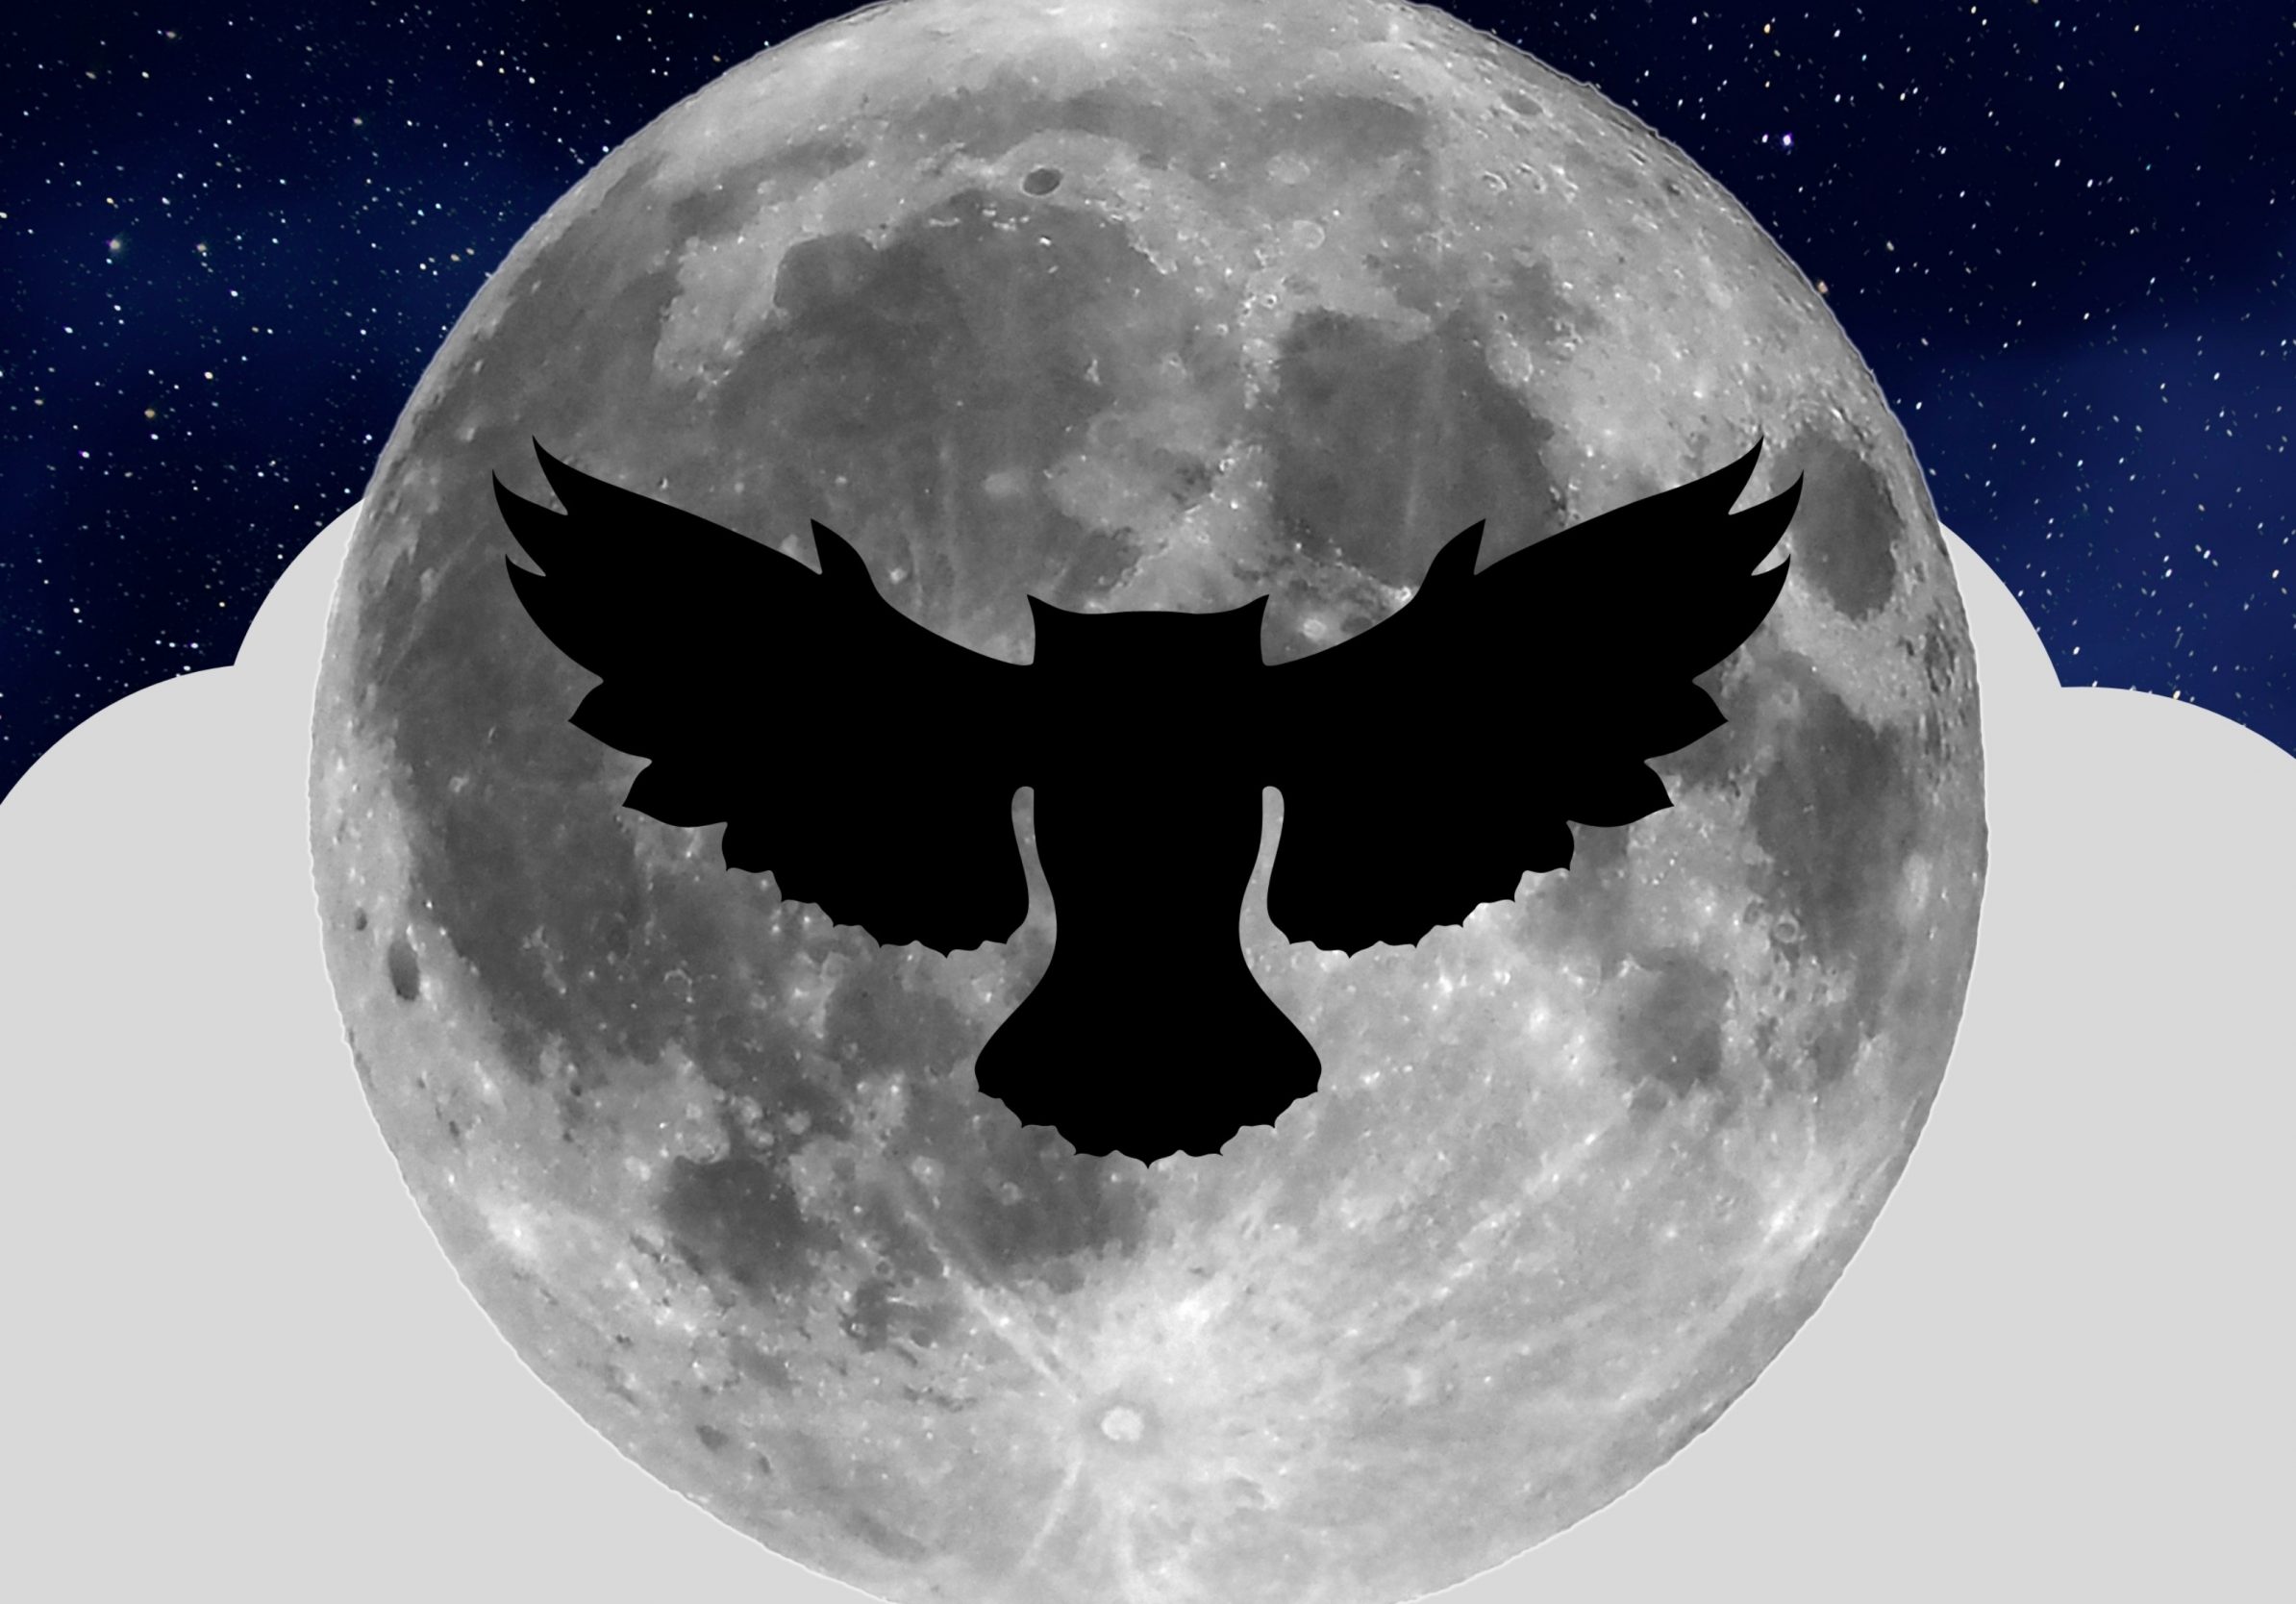 2388x1668 iPad Pro wallpapers Night Owl Full Moon iPad Wallpaper 2388x1668 pixels resolution